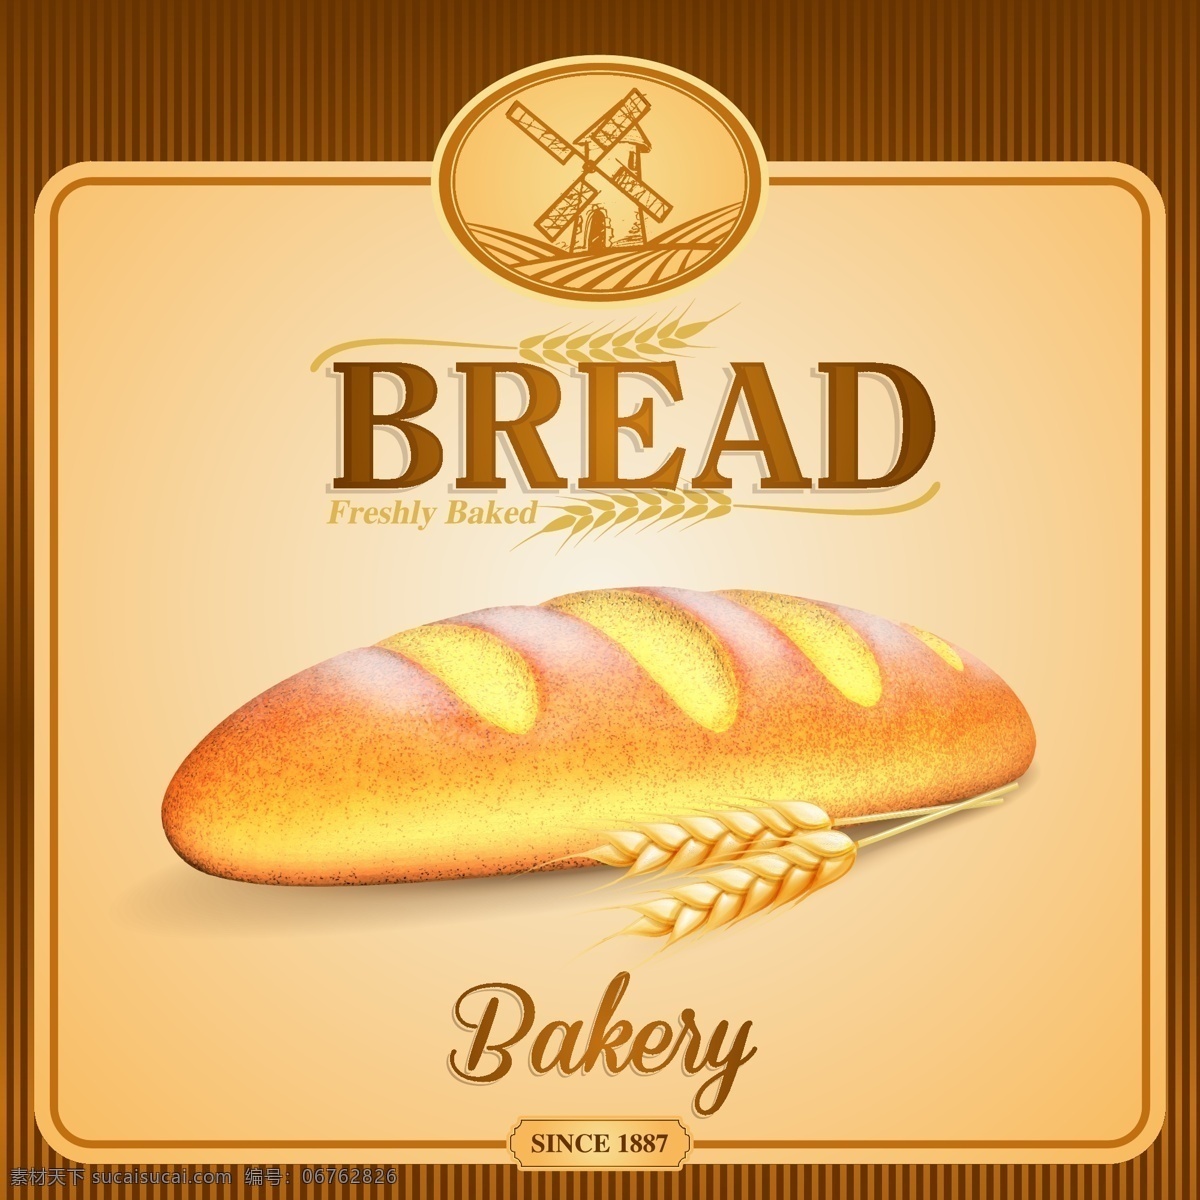 美味 全麦 面包 广告 矢量 厨师 海报 广告面包 全麦面包 荞麦面包 烘烤面包 食物面包 主题怀旧 背景 餐饮美食 生活百科 矢量素材 白色